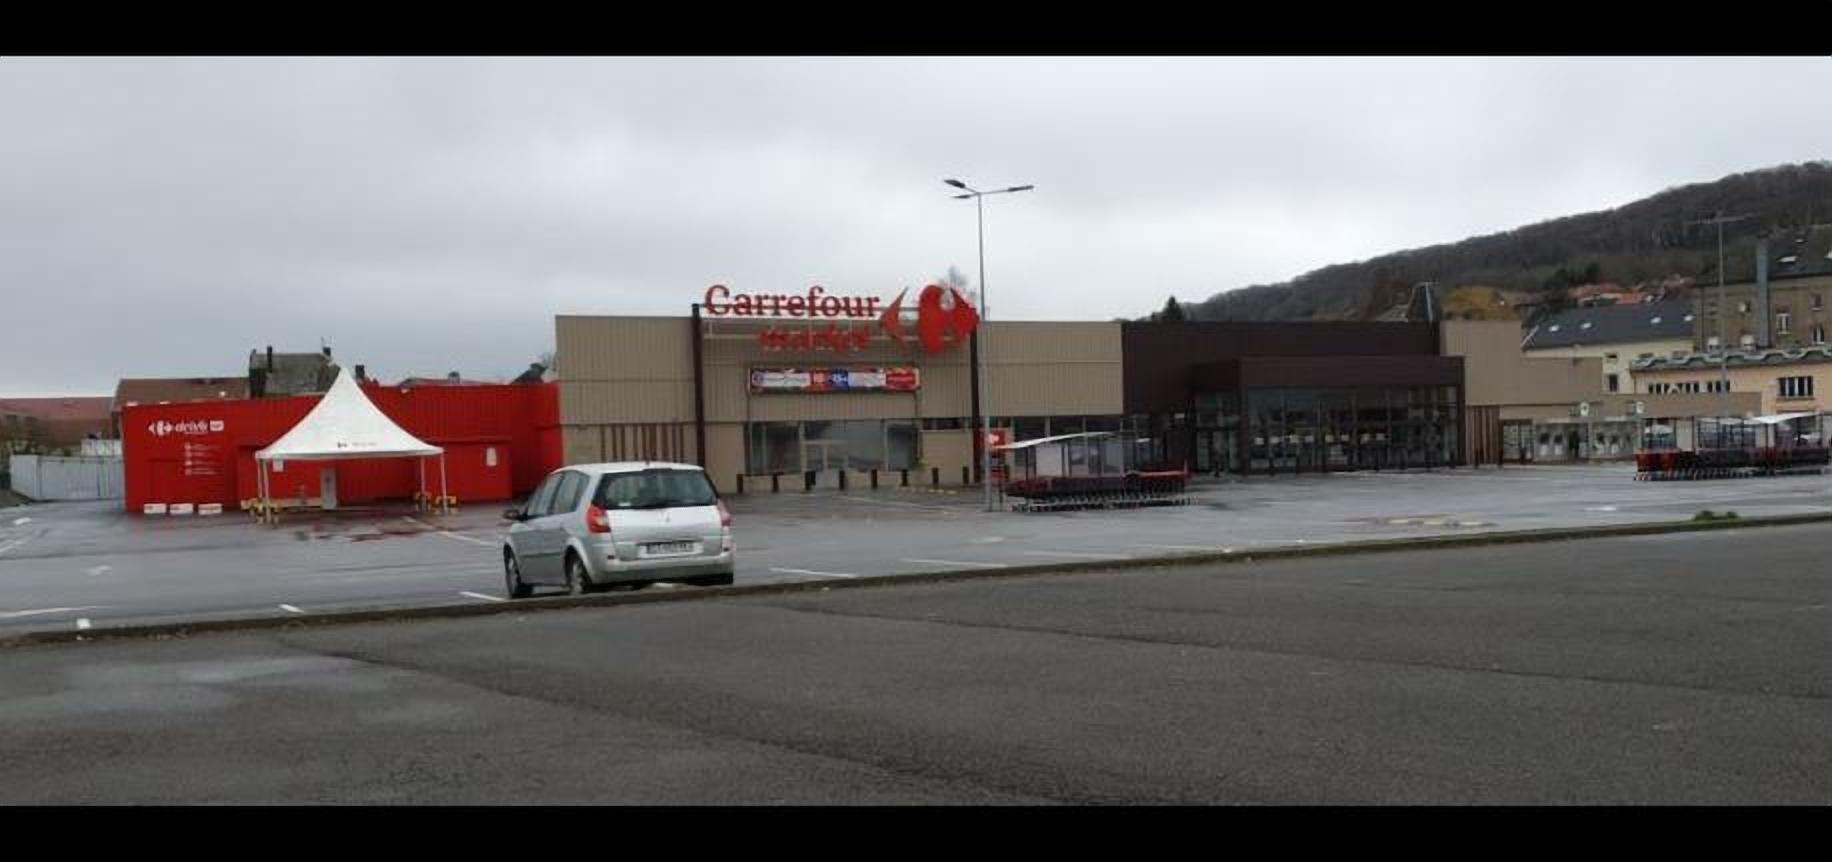 Carrefour Audun Le Tiche